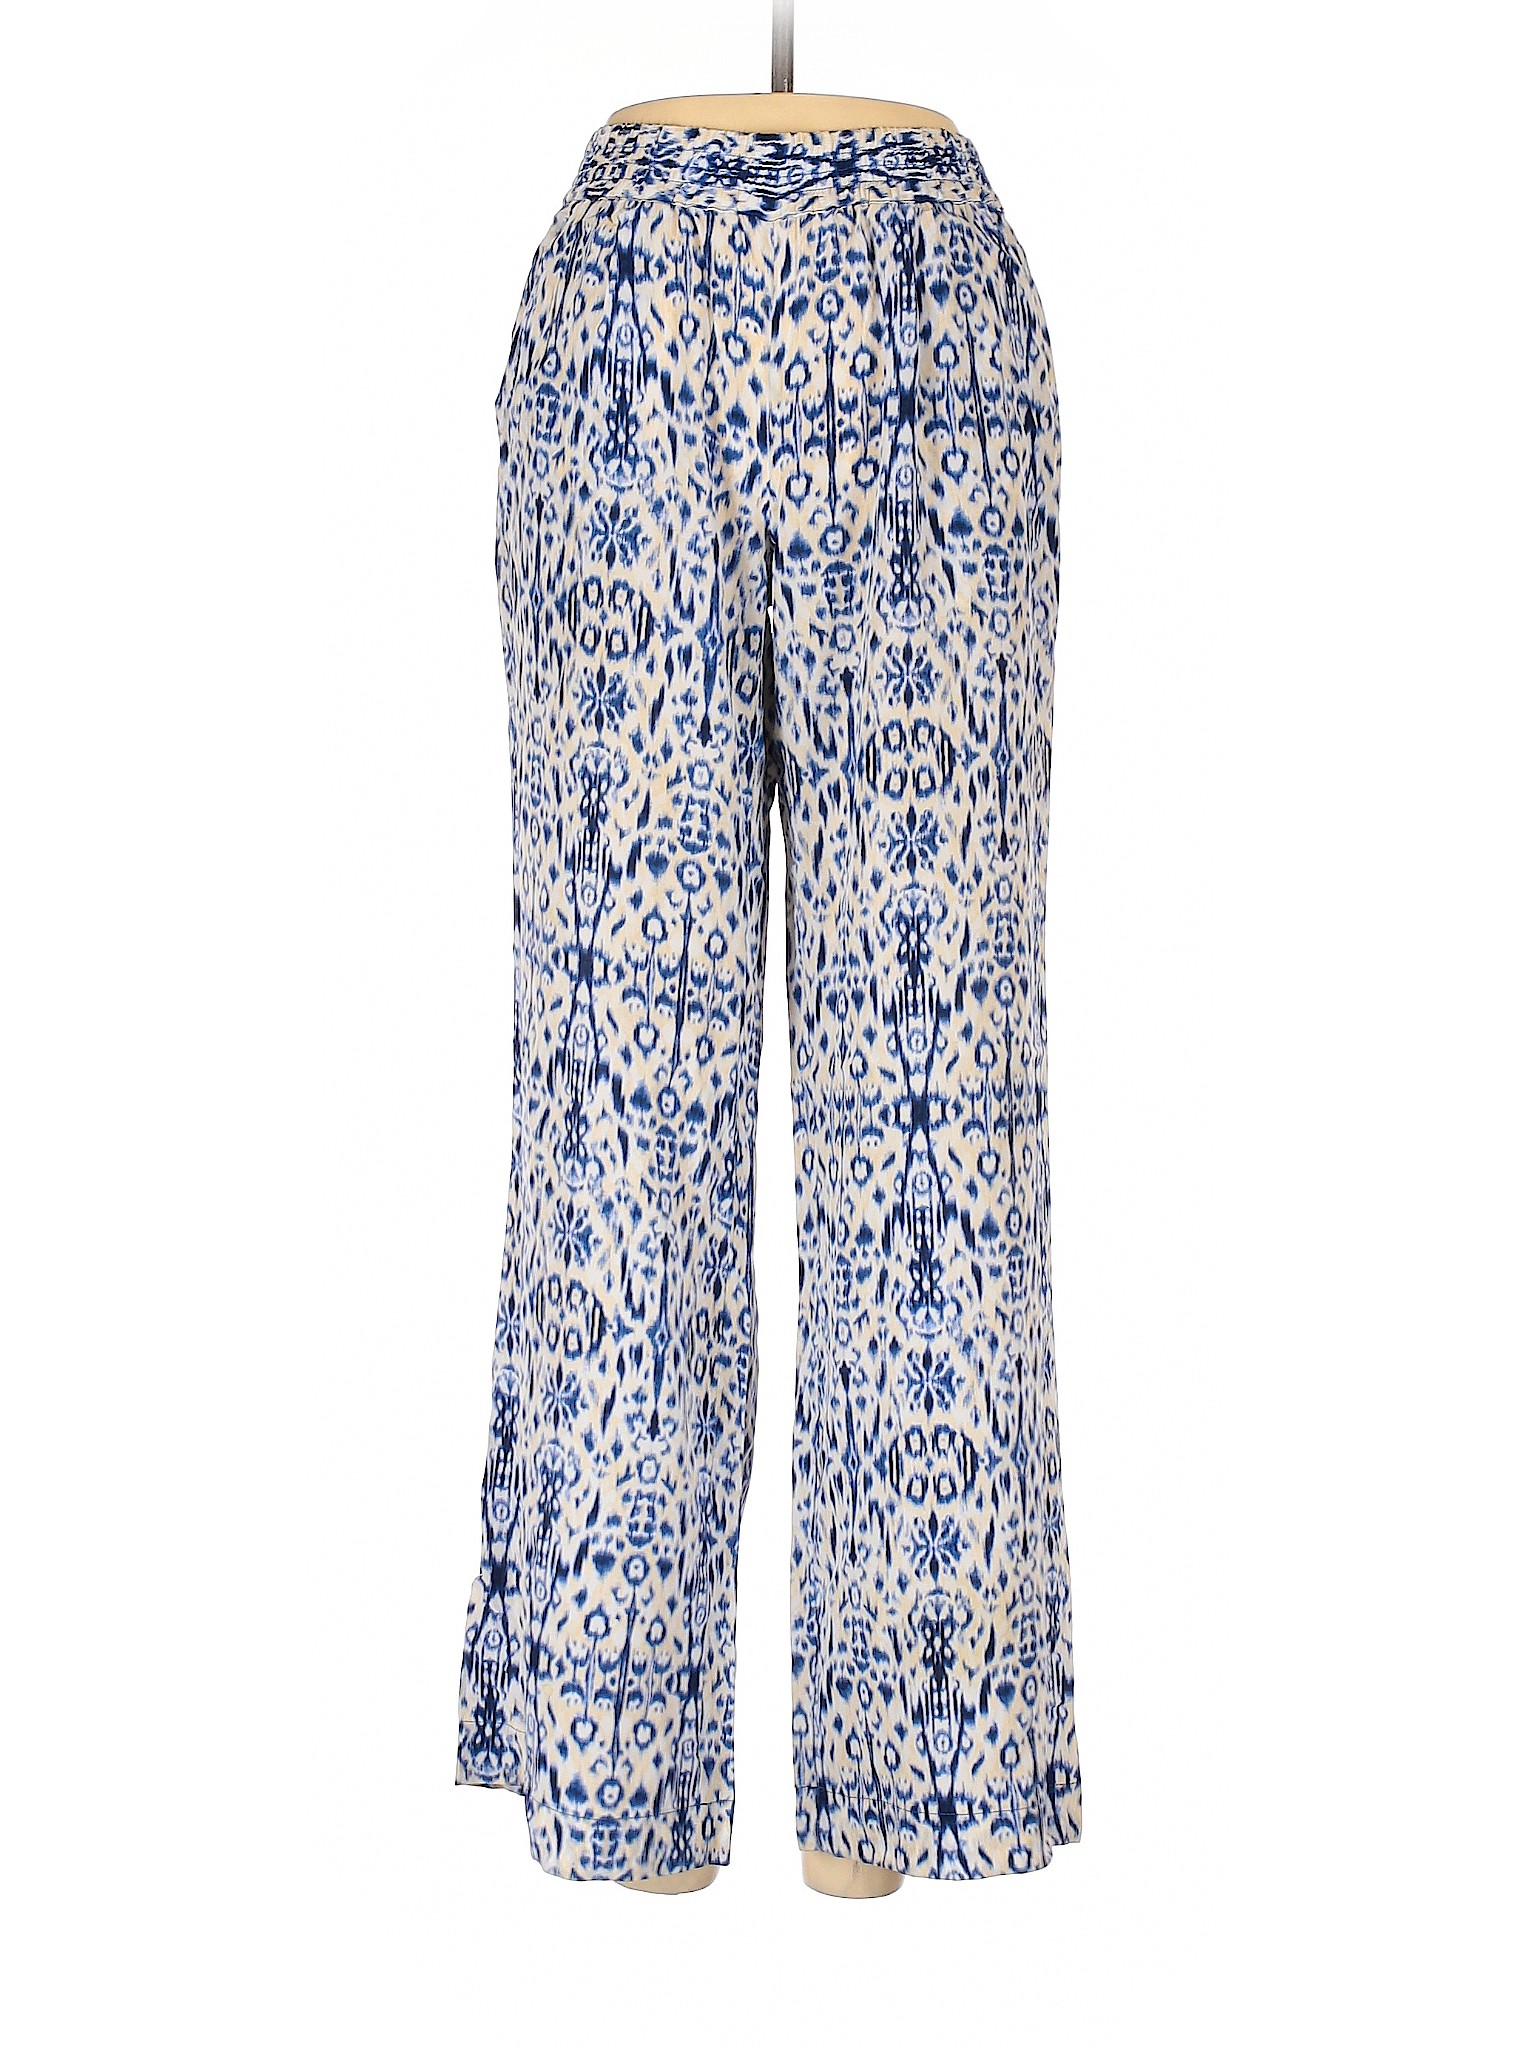 Joie Women Blue Casual Pants XS | eBay